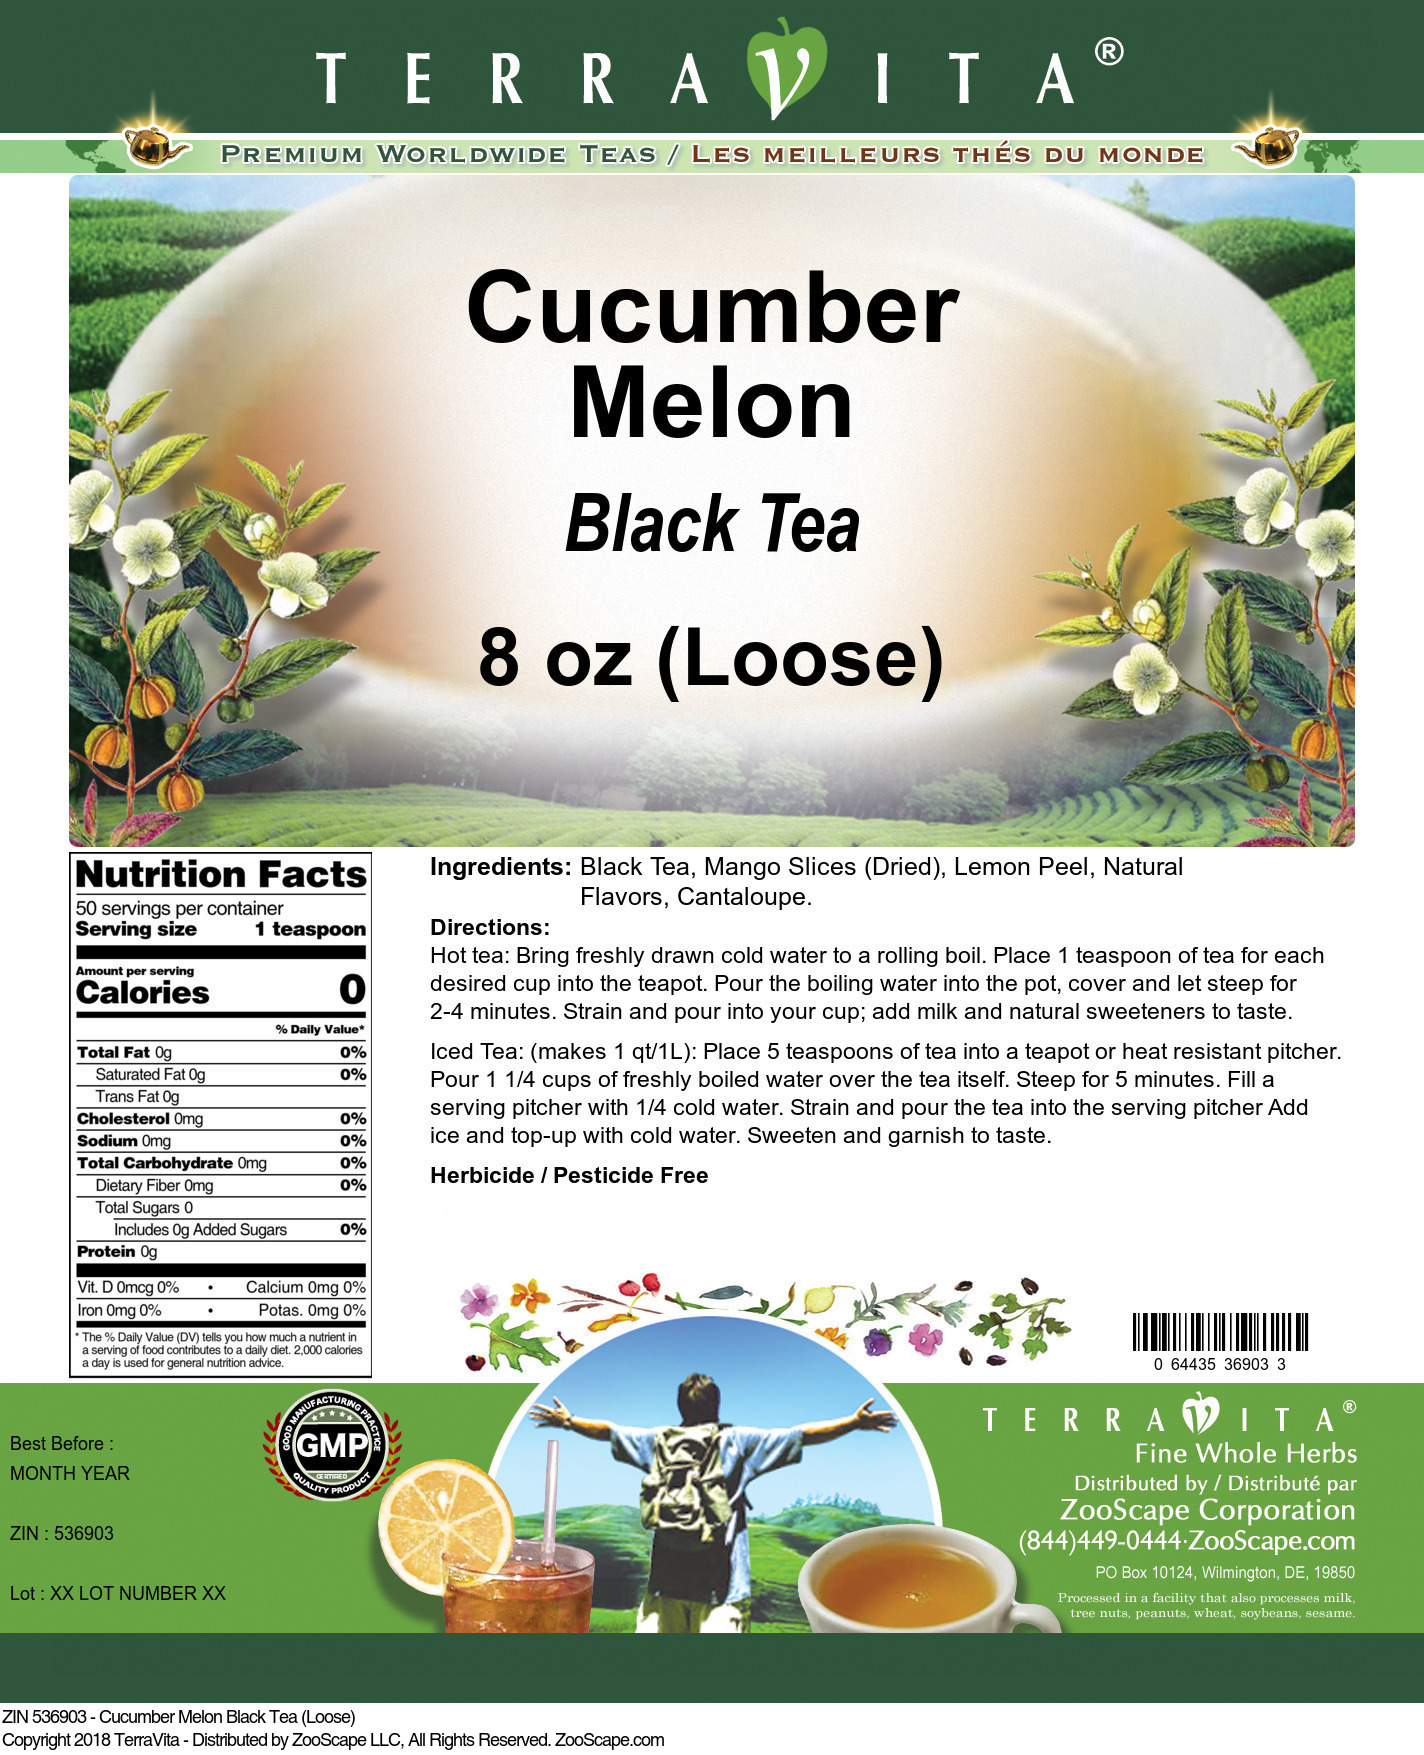 Cucumber Melon Black Tea (Loose) - Label